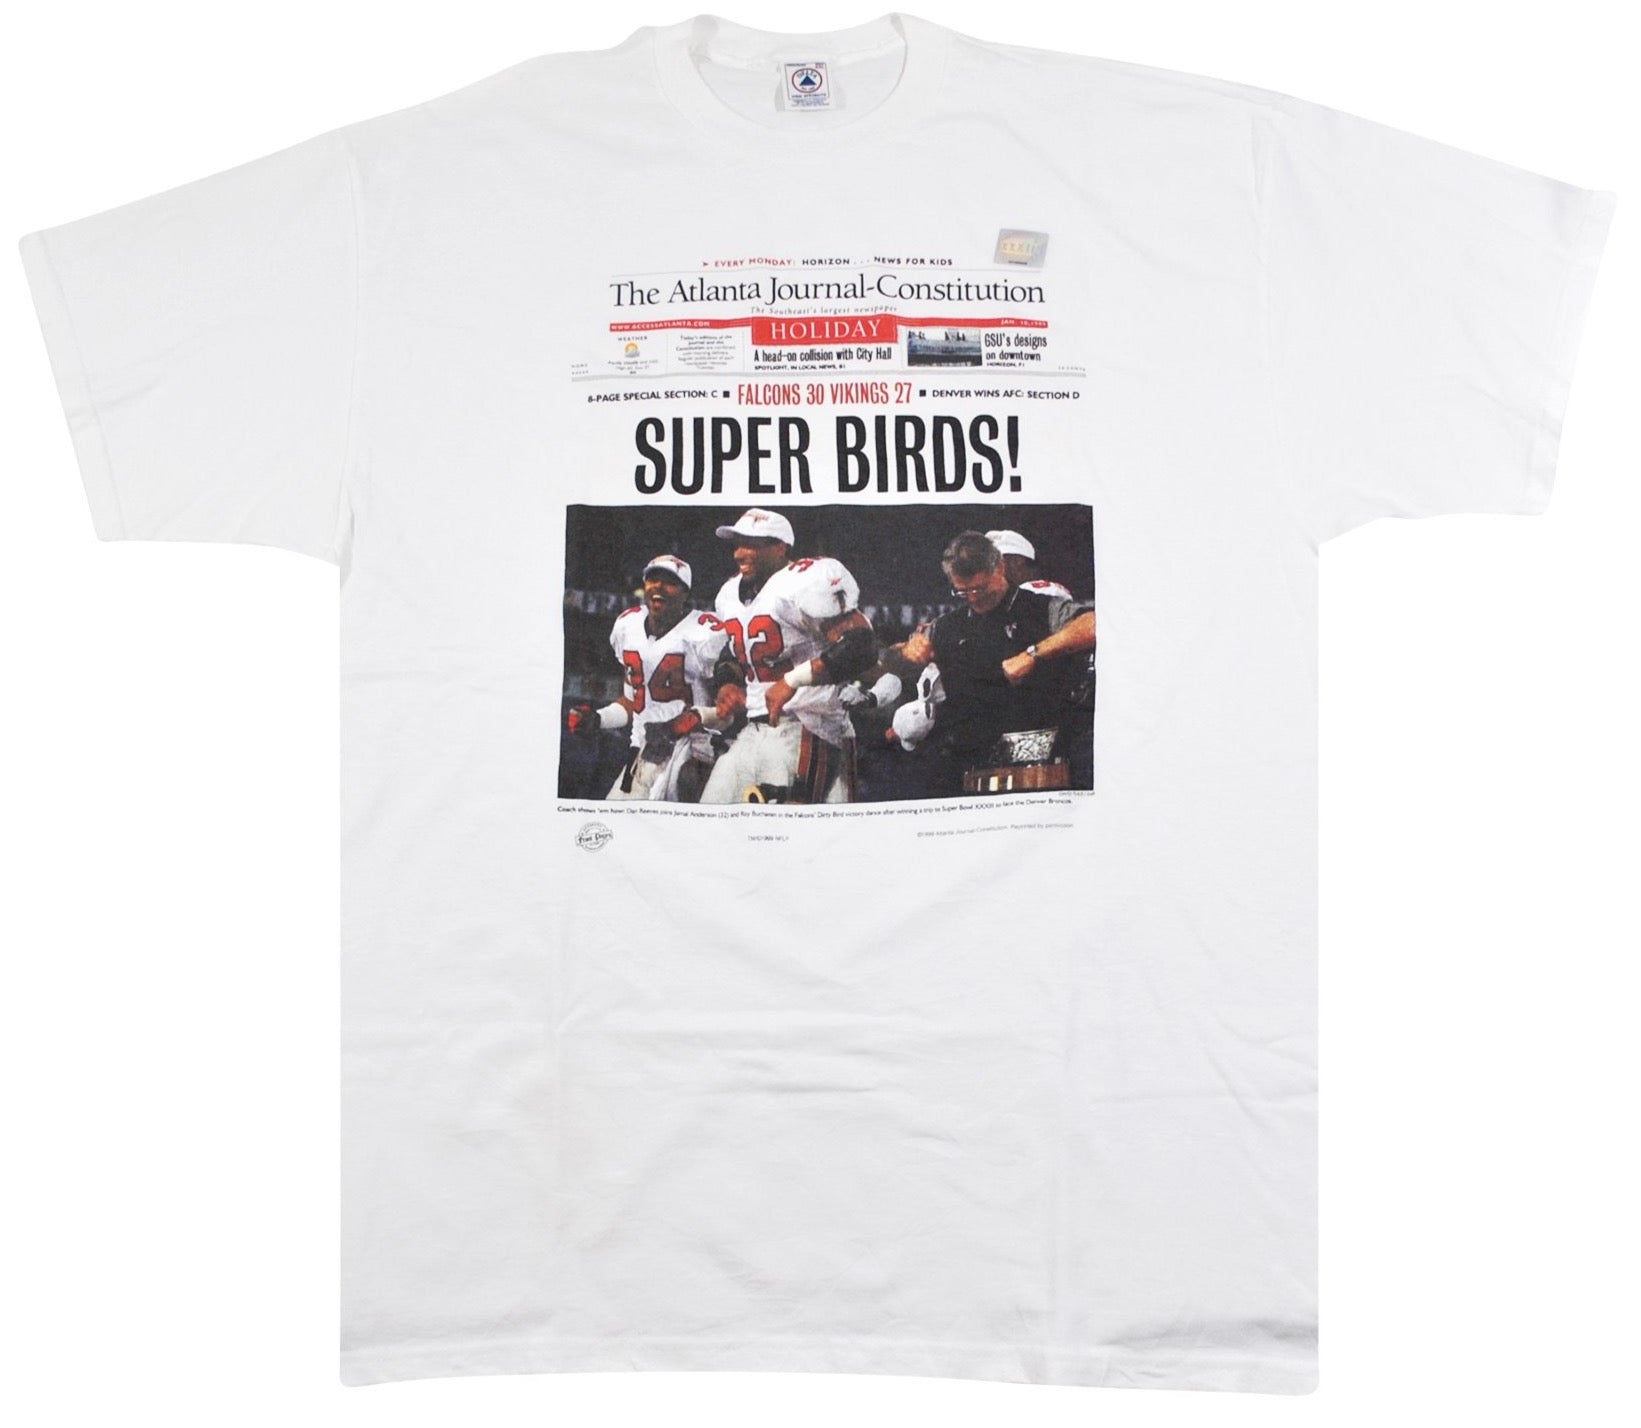 St. Louis Rams NFL Super Bowl Champions 1999 Vintage T-shirt 